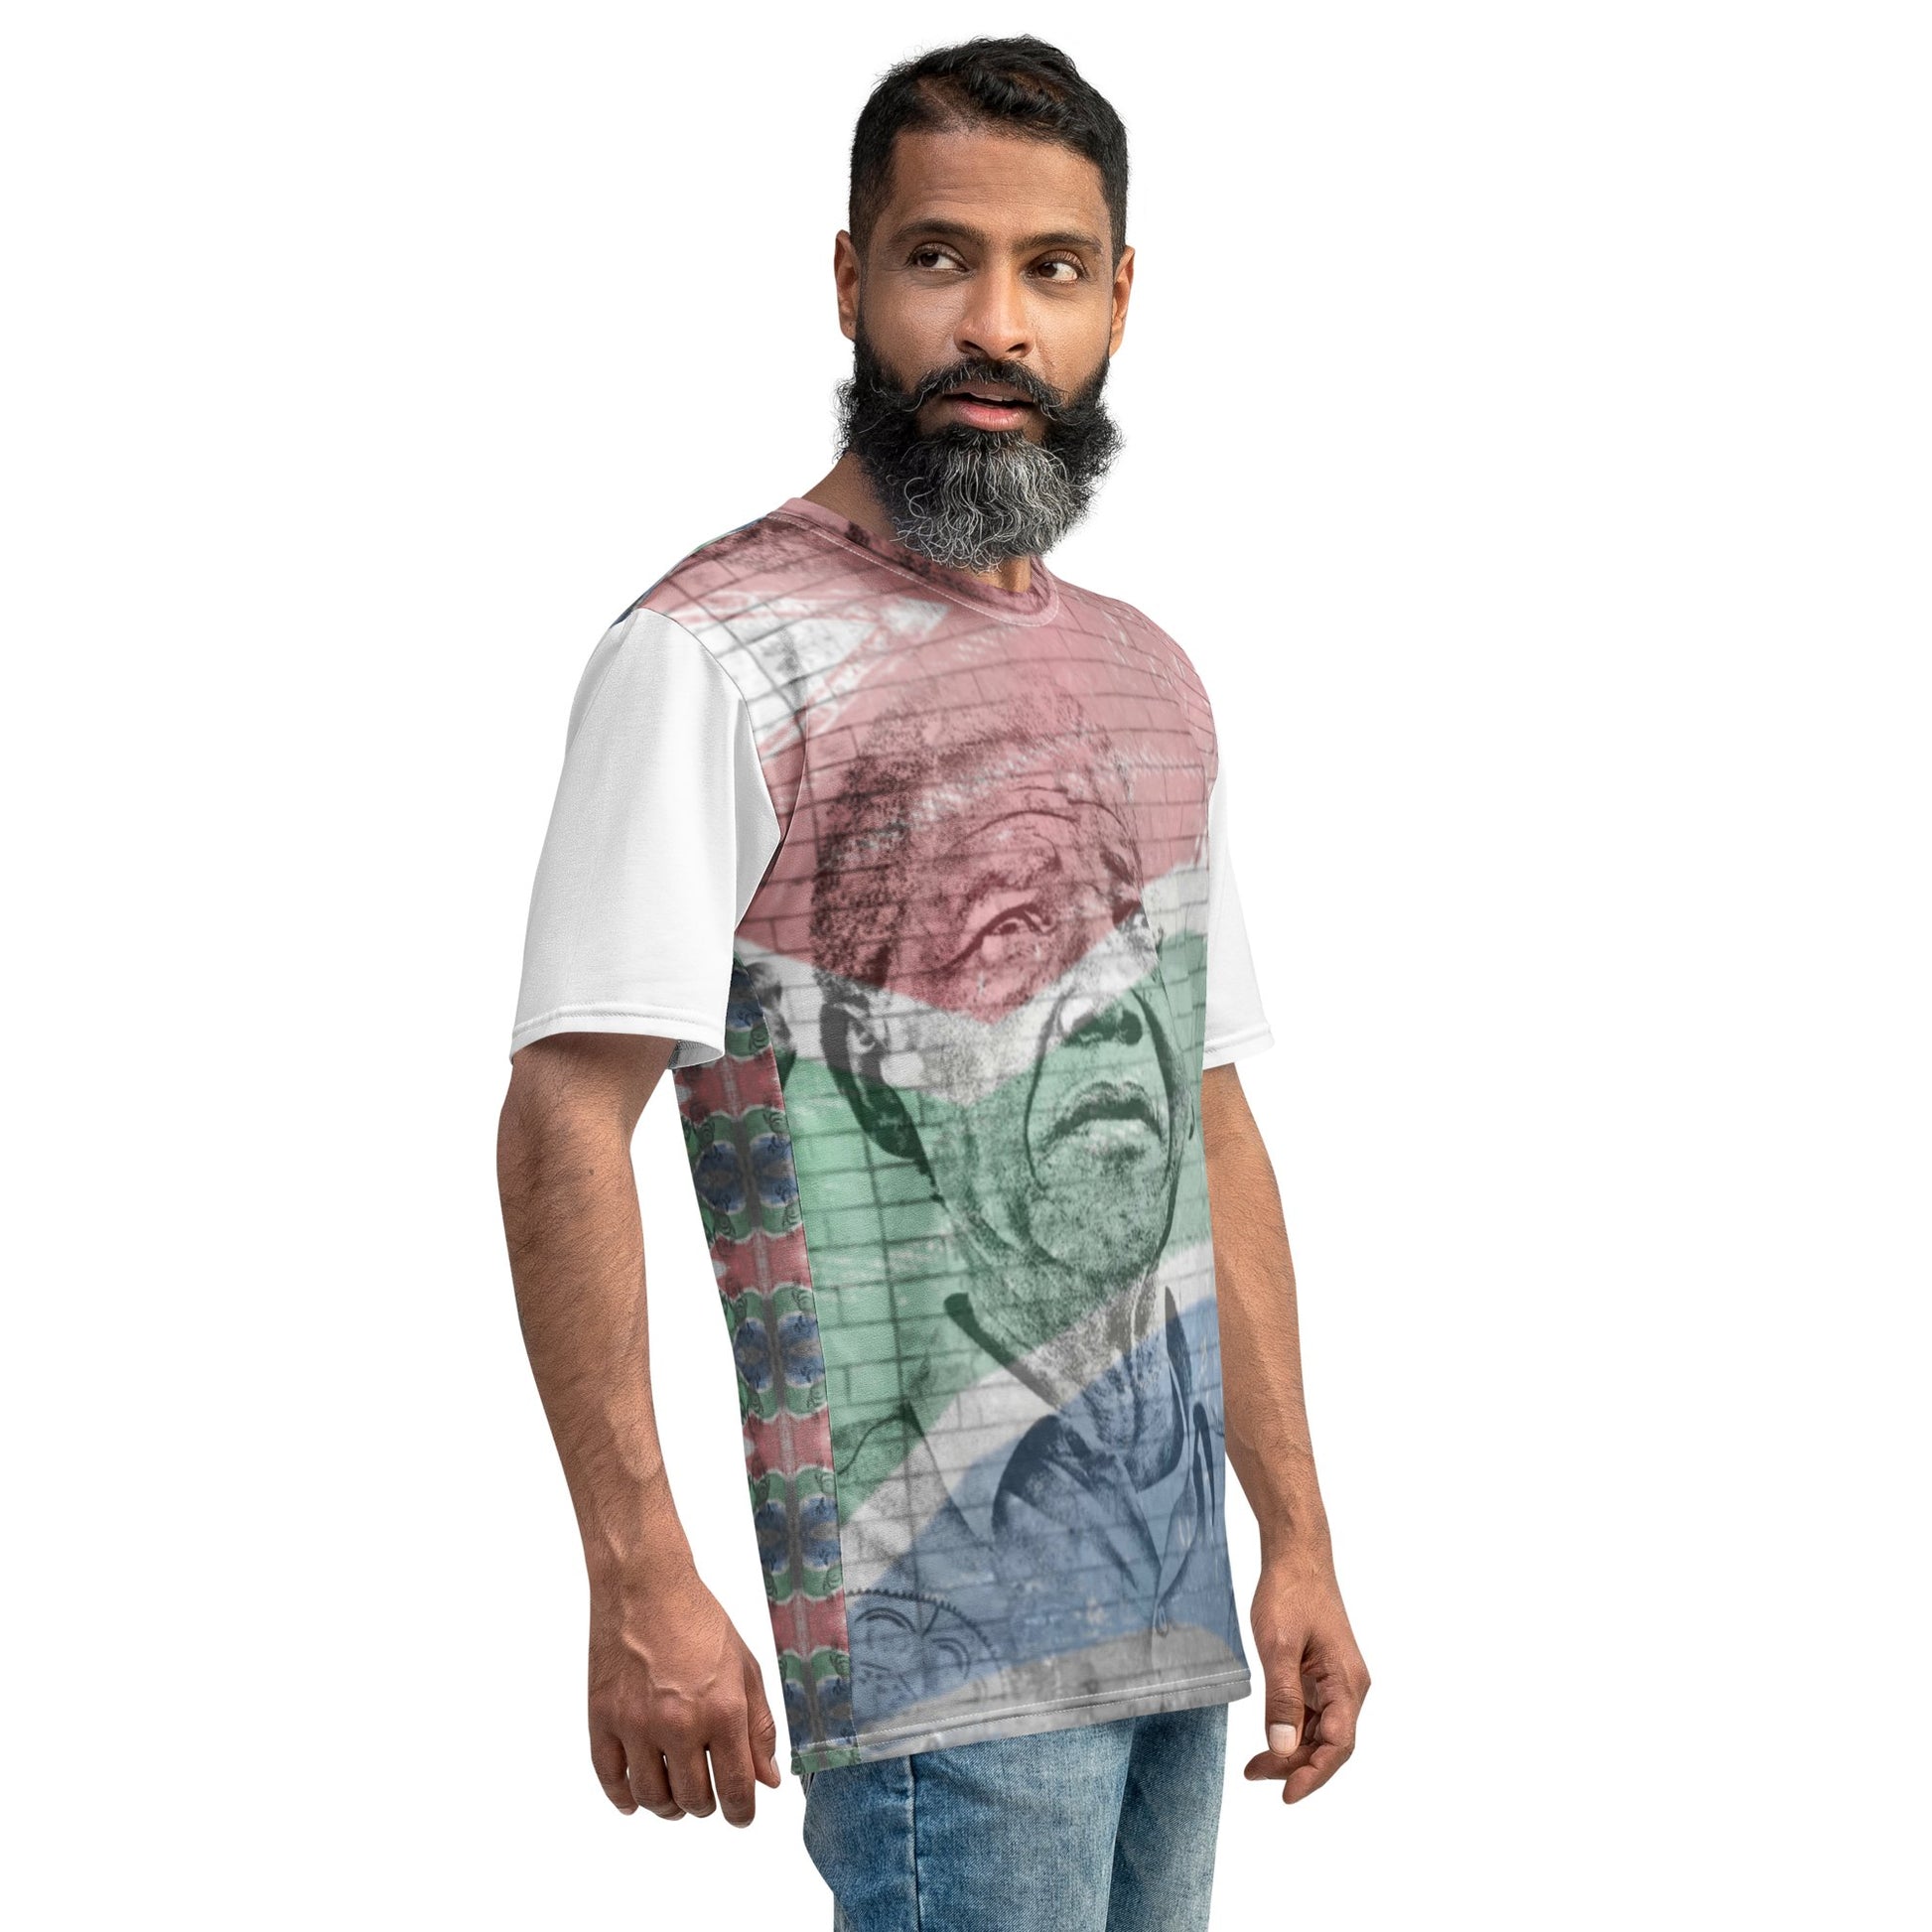 Nelson Mandela All-Over Print Men's Crew Neck T-Shirt - Souled Out World